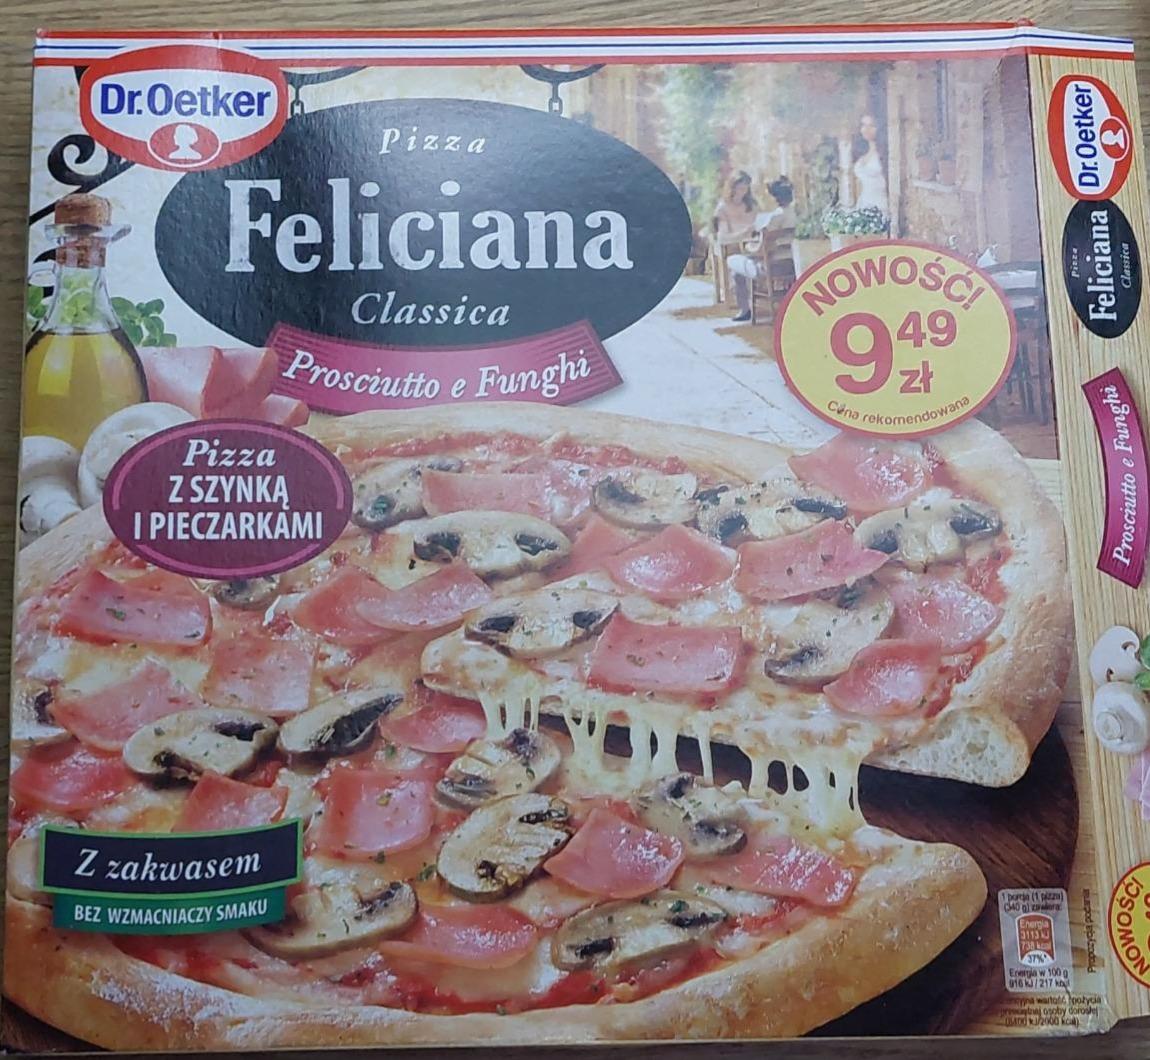 Zdjęcia - Pizza prosciutto e funghi Feliciana Dr.Oetker